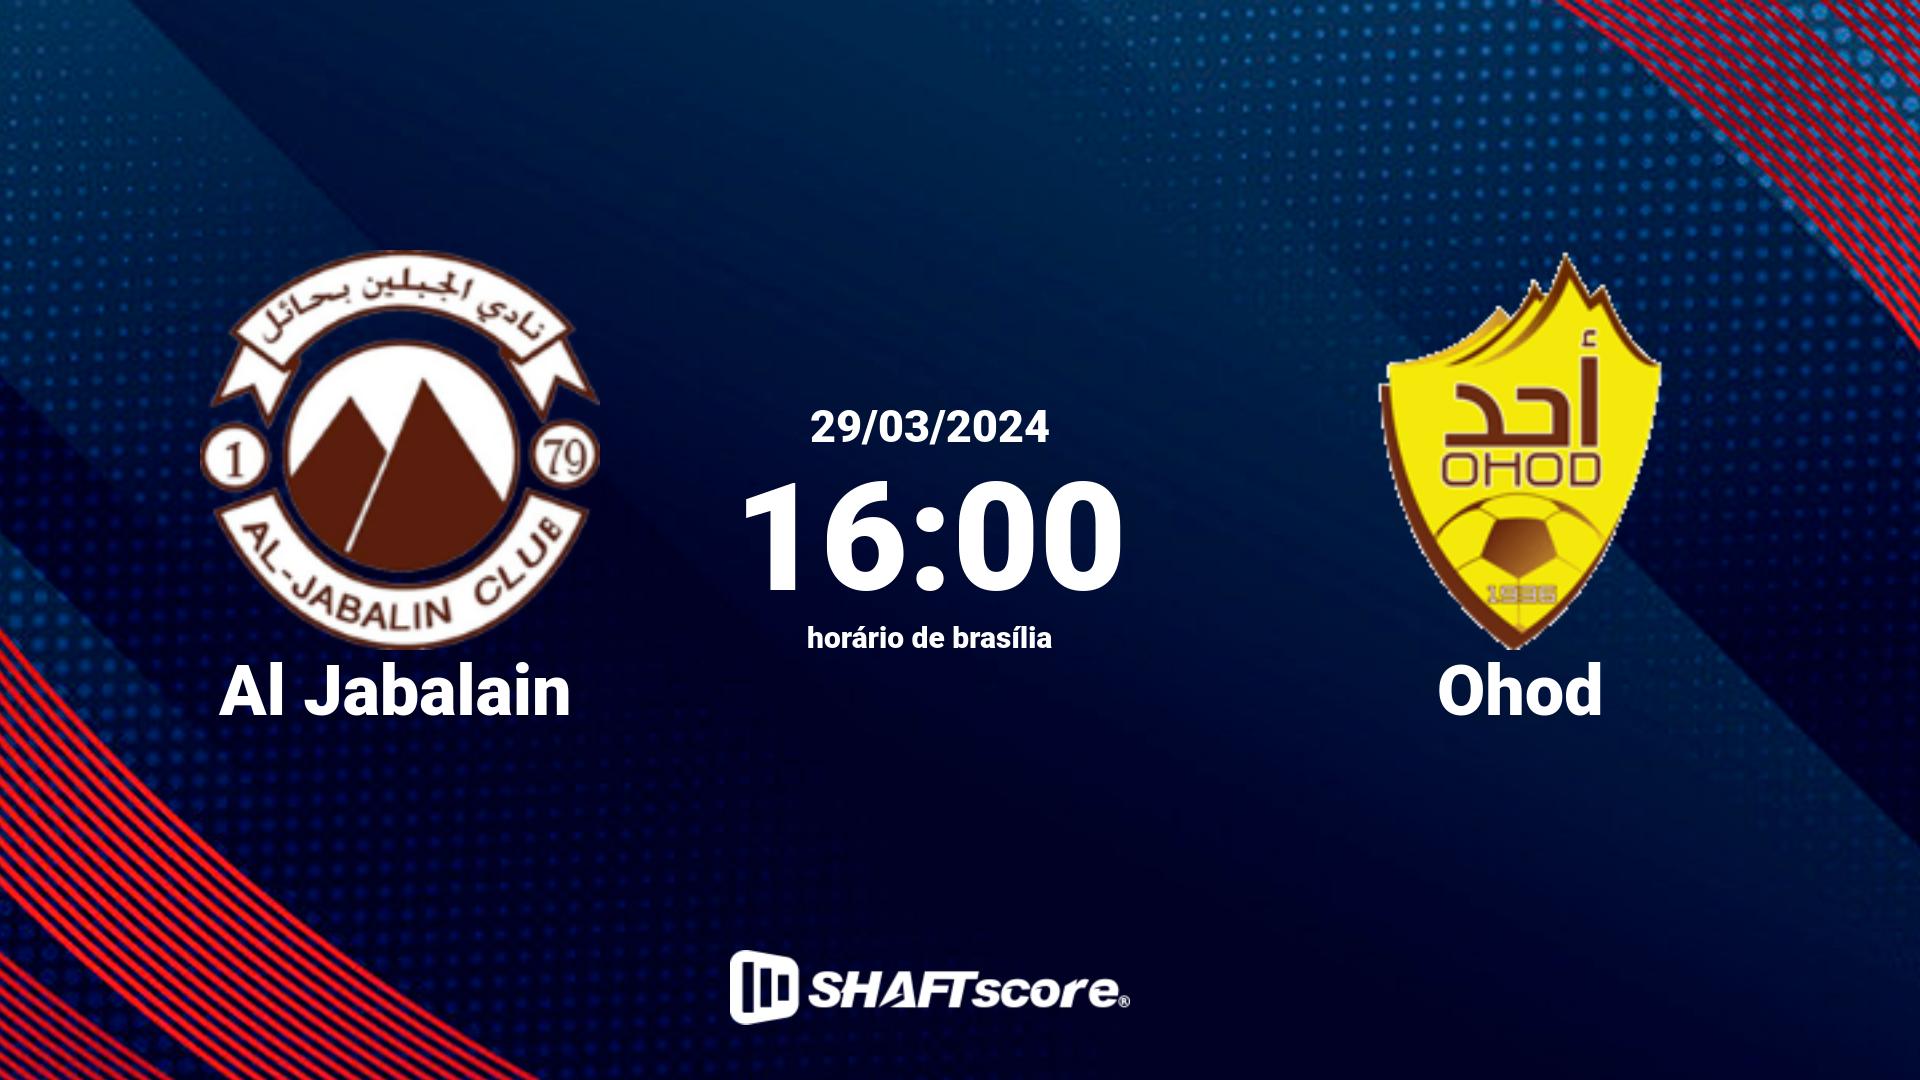 Estatísticas do jogo Al Jabalain vs Ohod 29.03 16:00